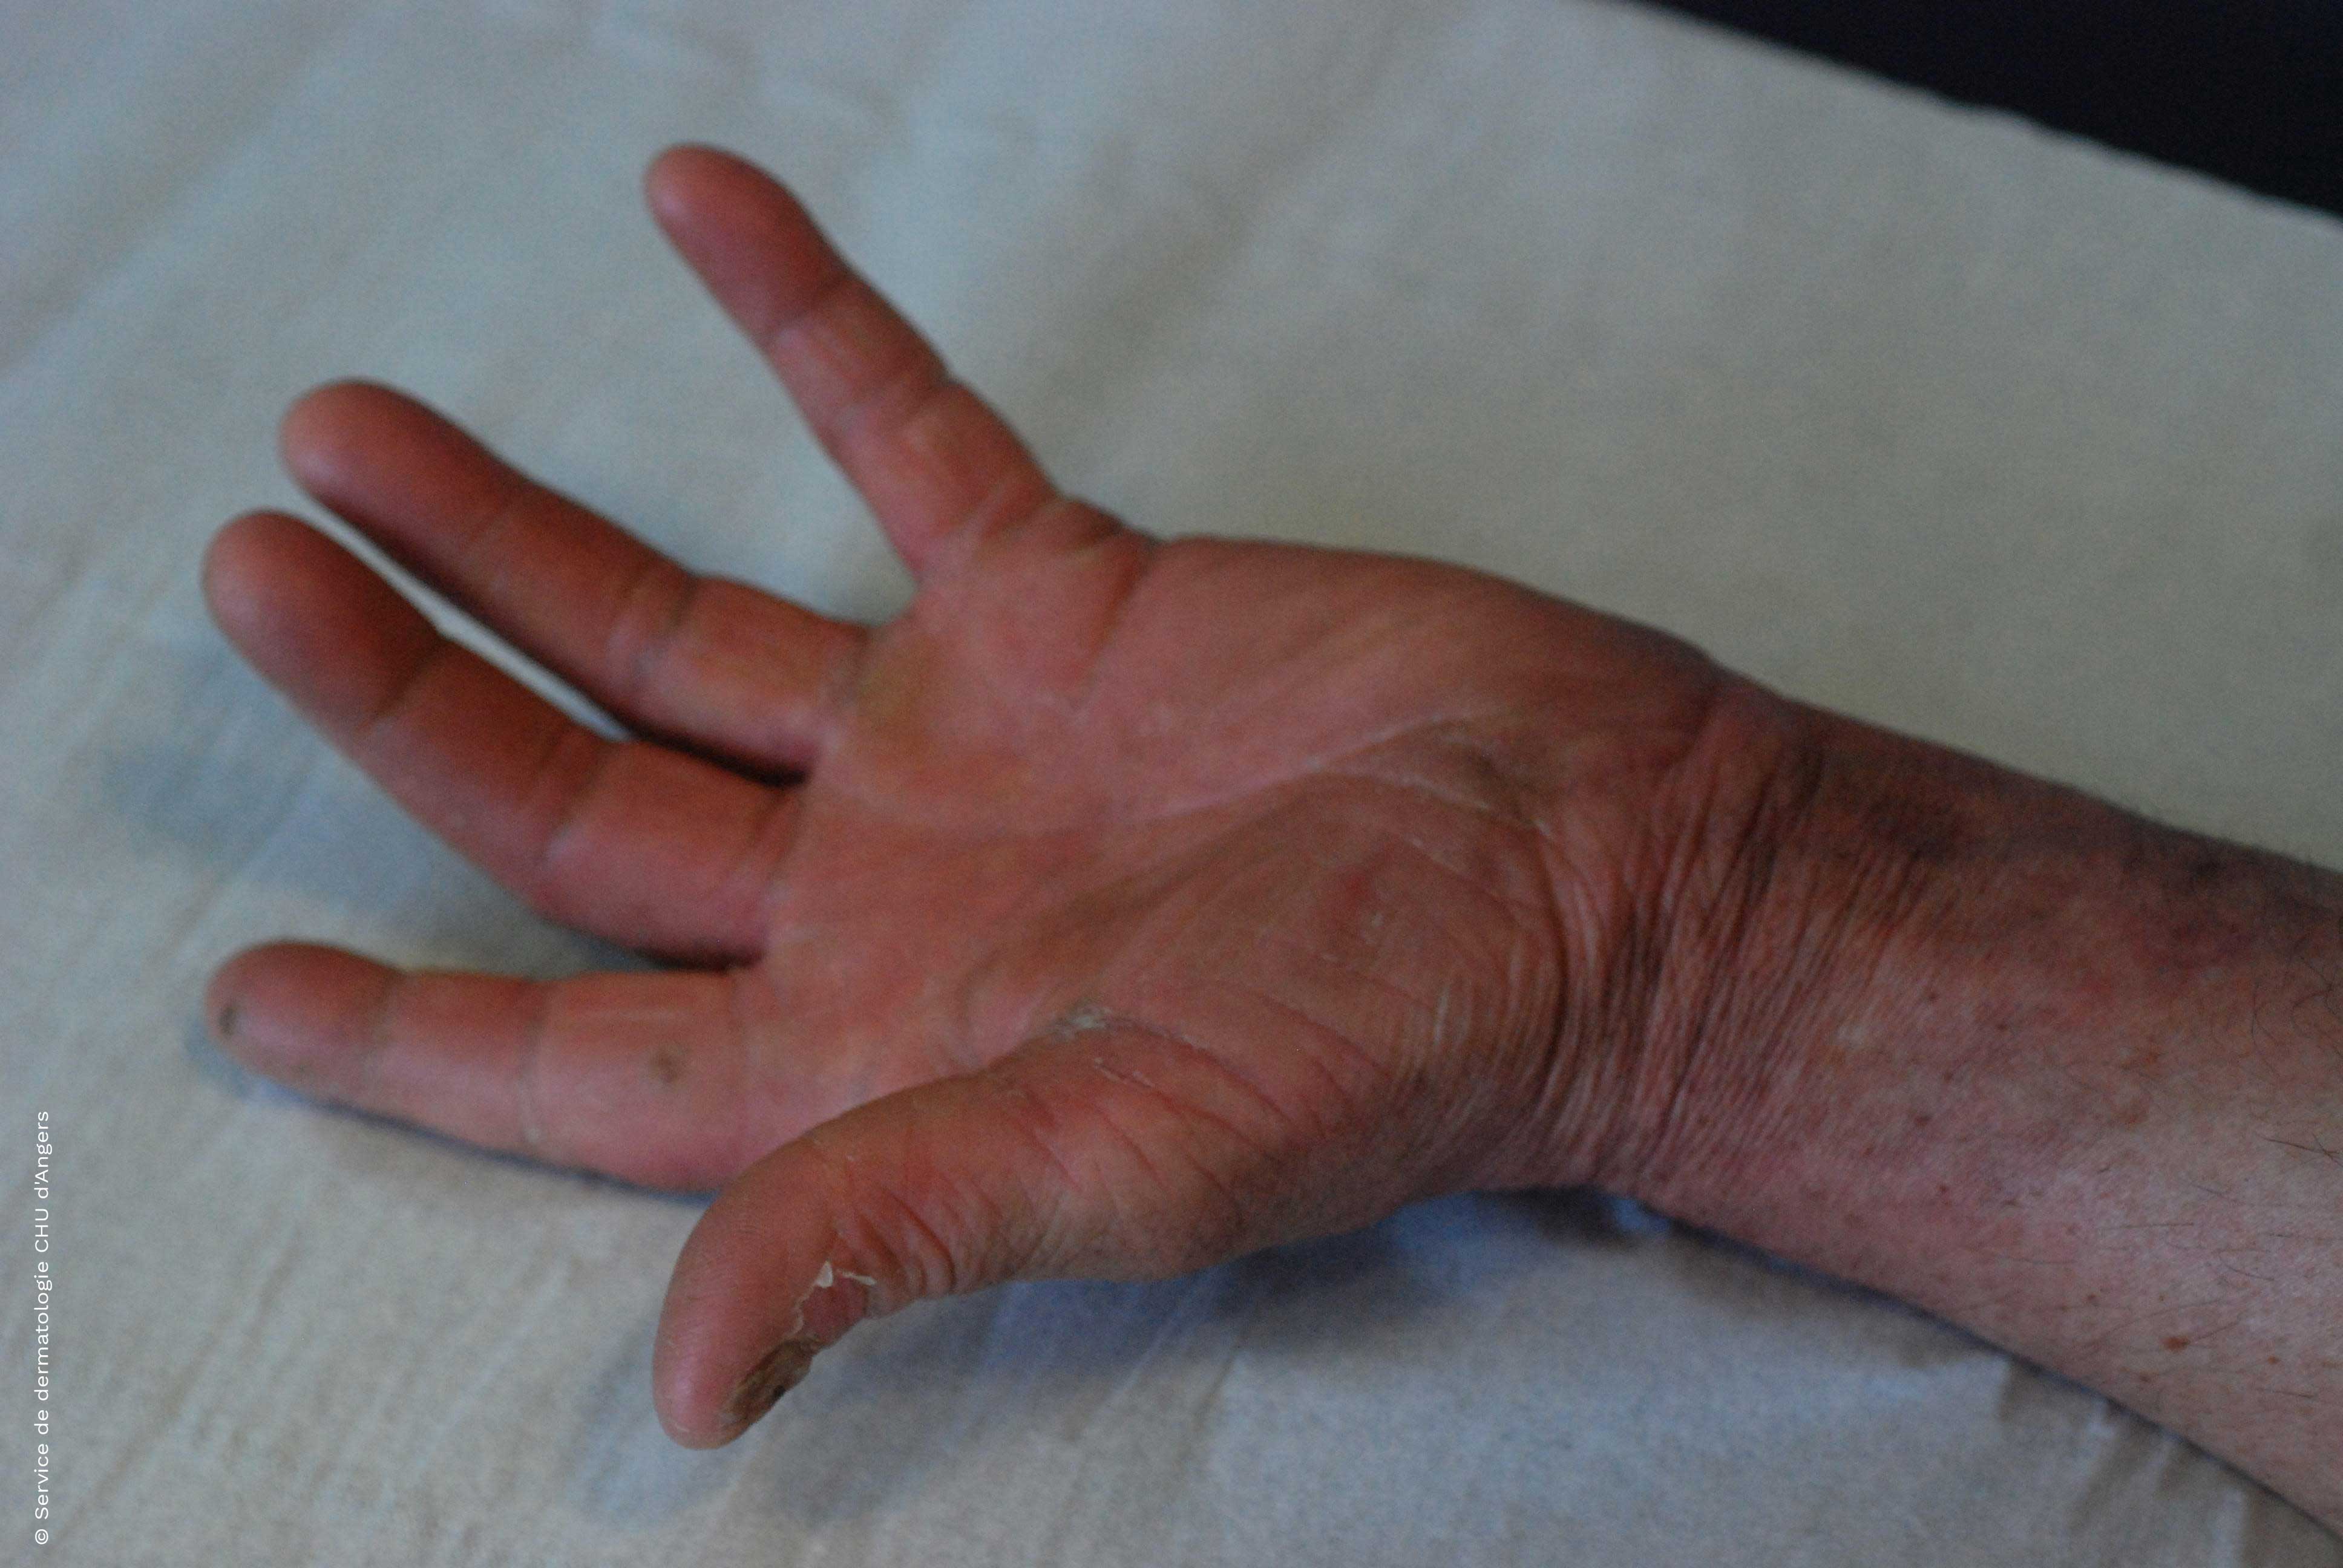  Dermatophytie de la main après traitement antifongique